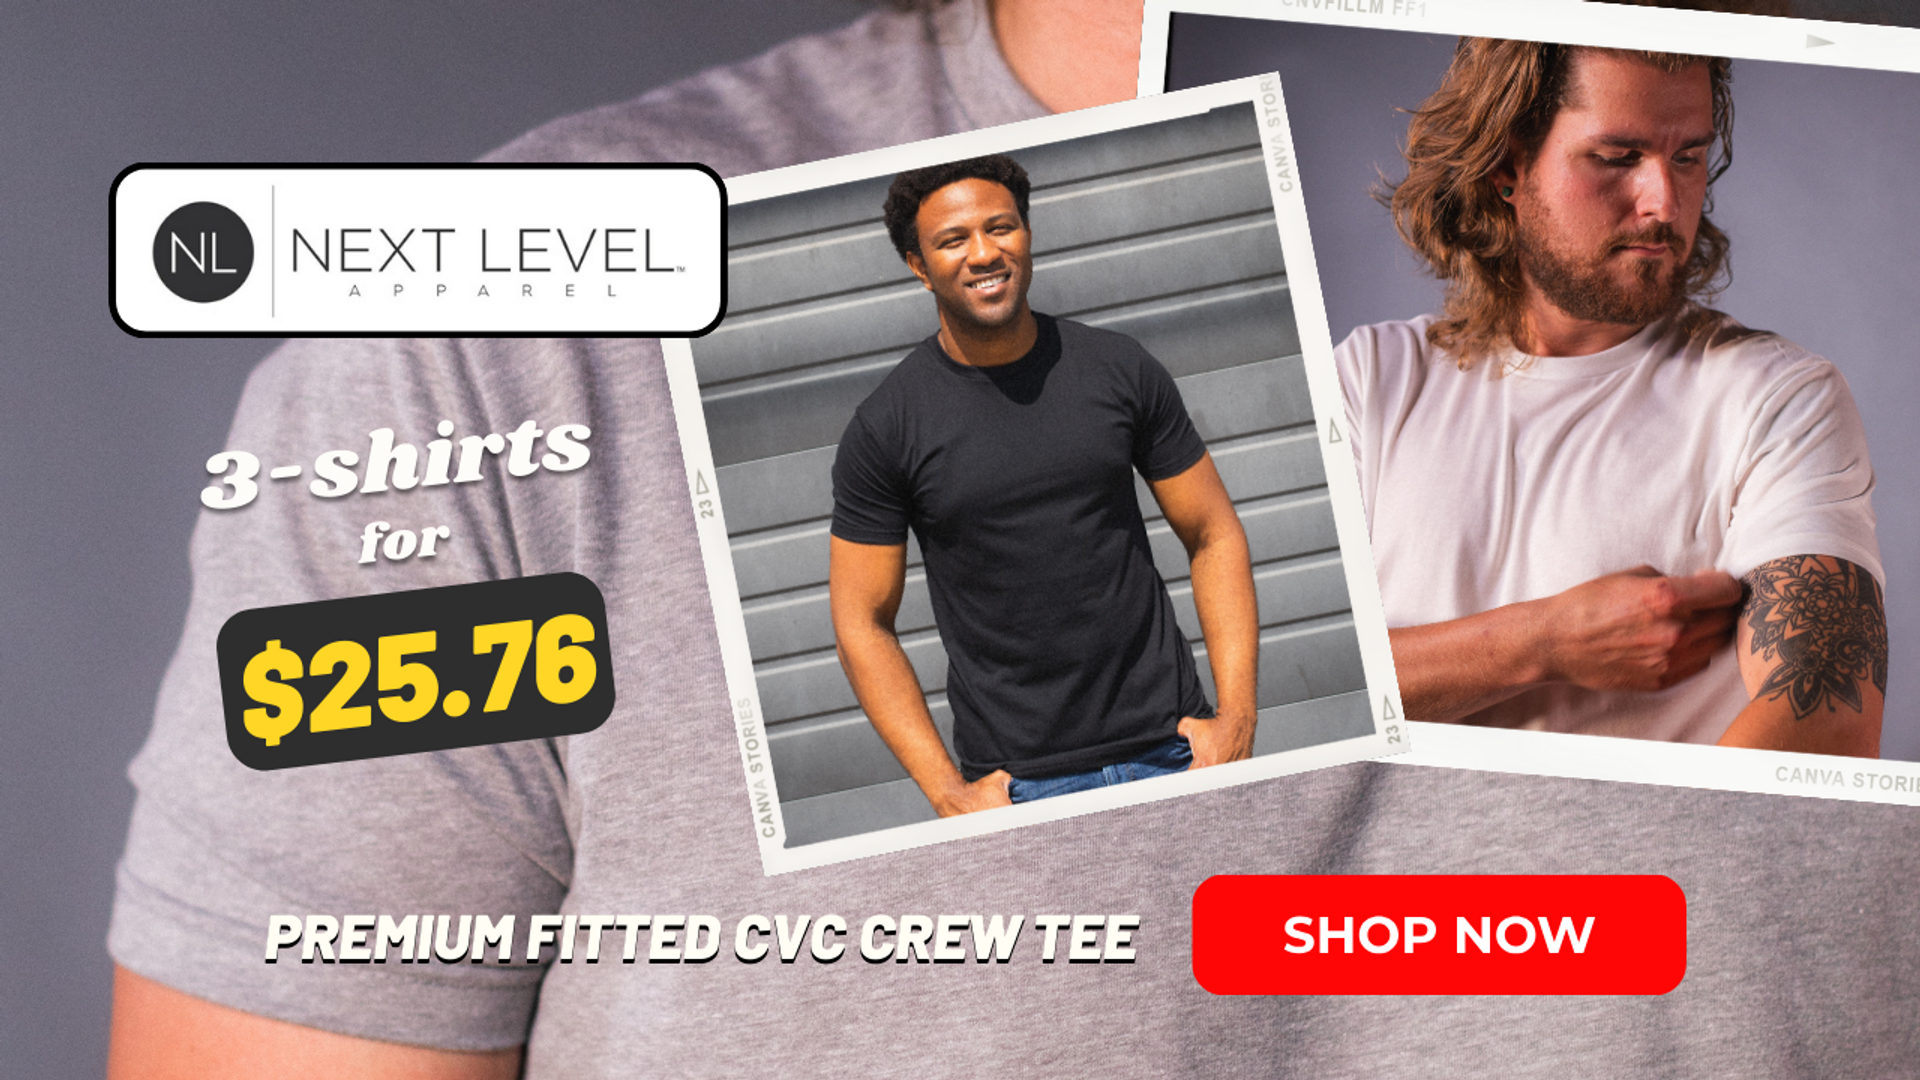 LV Airplane Big Logo shirt, Men's Fashion, Tops & Sets, Tshirts & Polo  Shirts on Carousell